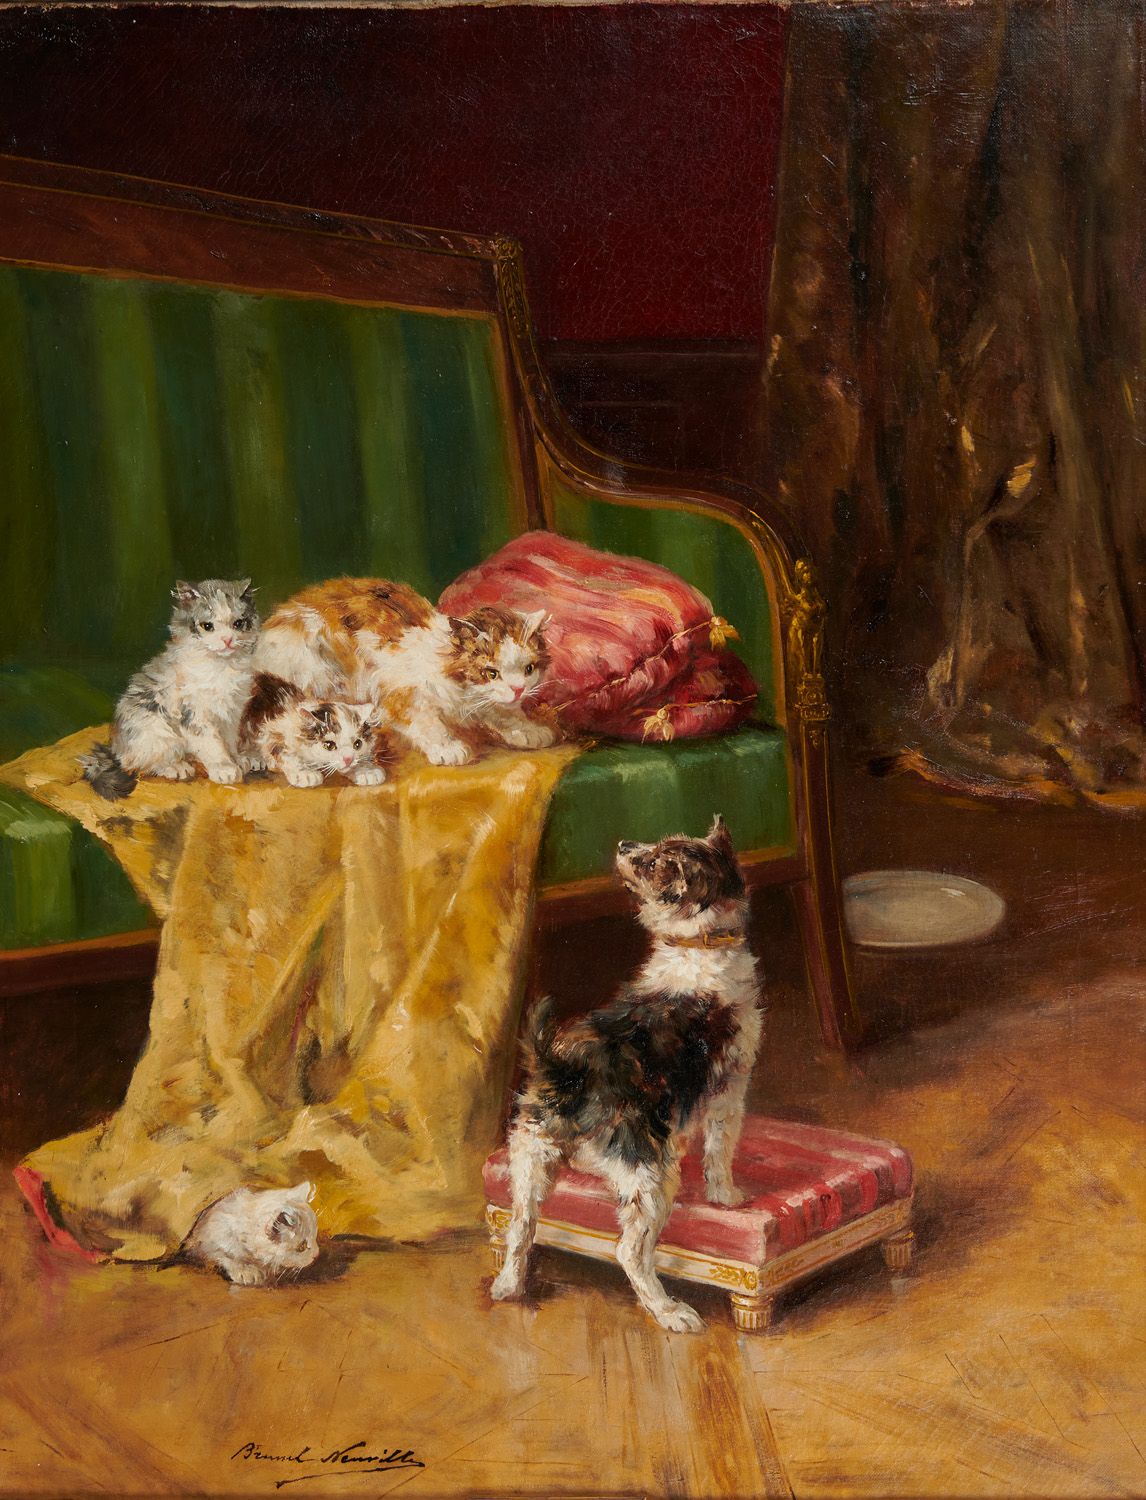 Null A.Brunel de neuville 1852-1941

小猫和小狗

布面油画，左下角有签名

74 x 54